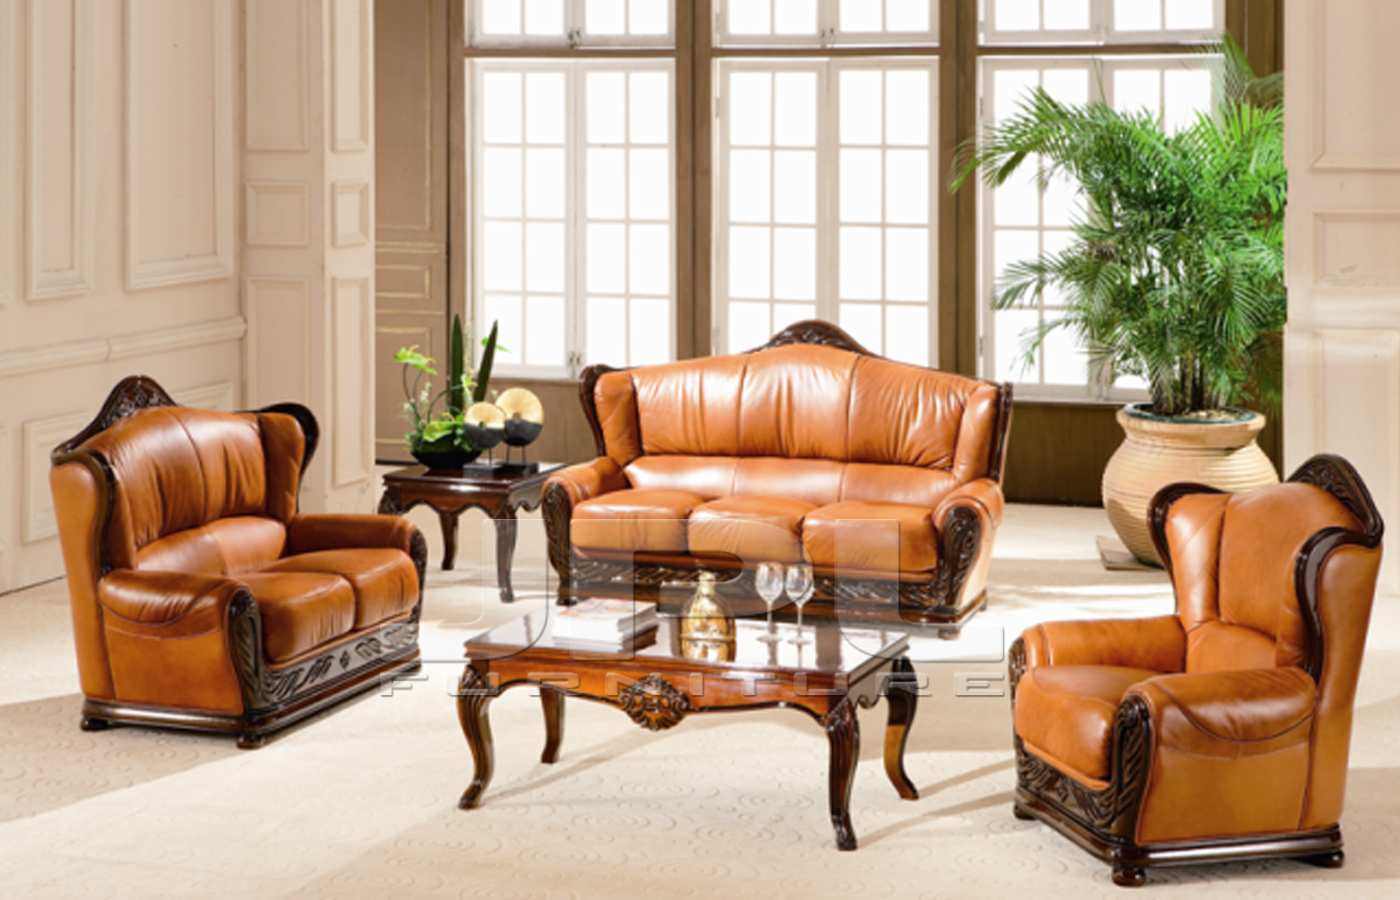 Наборы мебели диван 2 кресла. Мягкая мебель Пронто-3 диван 2 кресла. Кожаная мебель. Кожаная мебель в интерьере. Кожаная мебель для гостиной.